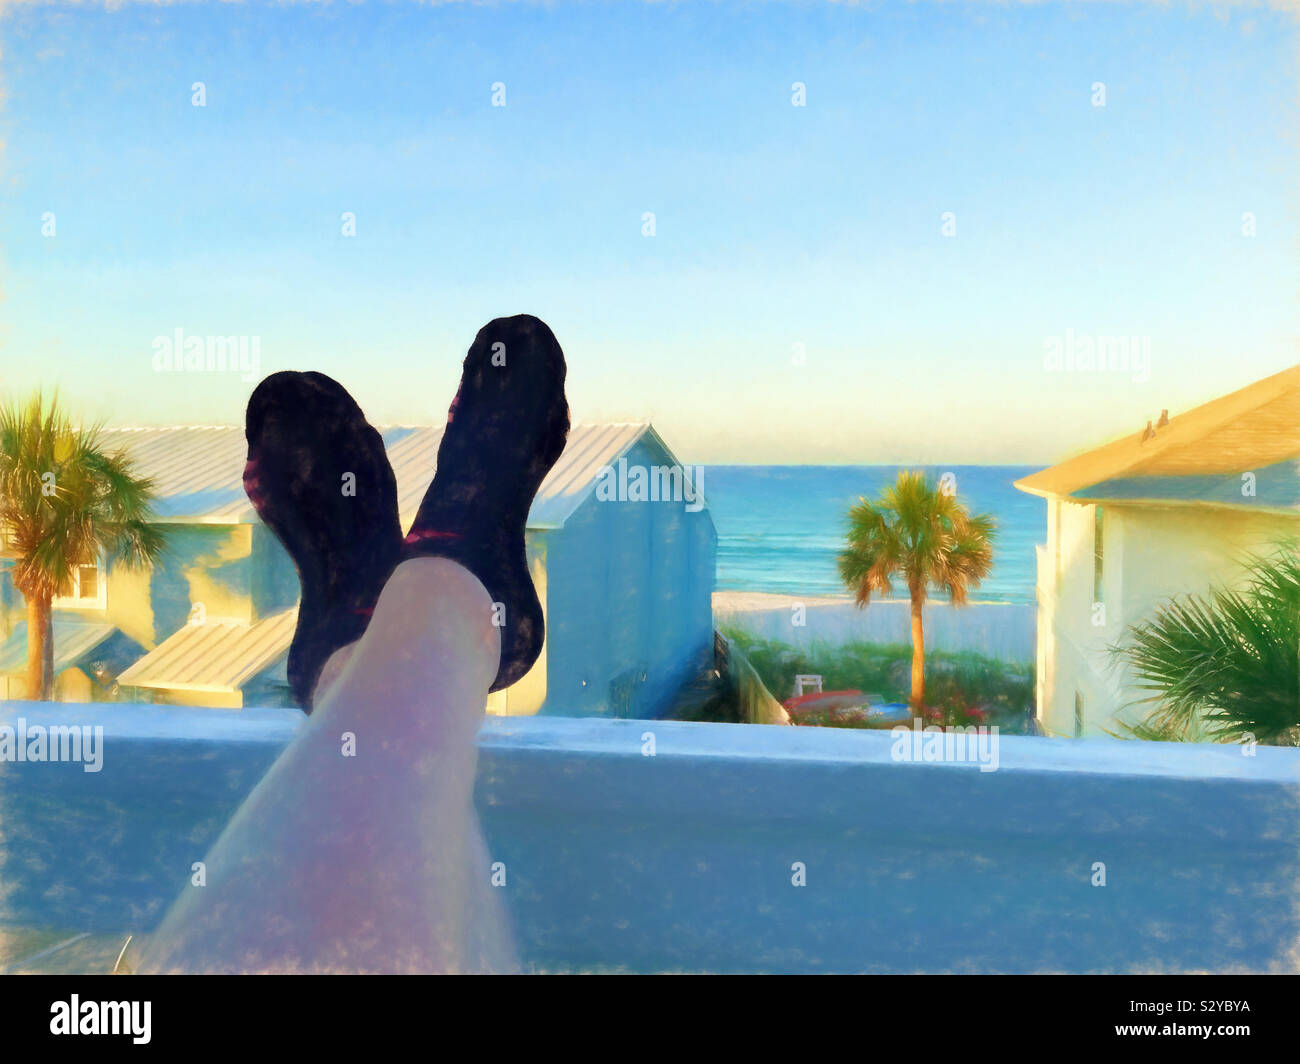 Eine malerische Aussicht auf das Meer von einer zweiten Sitzreihe Eigentumswohnungen Balkon. Eine Frau hat ihre Füße aufgestützt auf der Veranda Geländer. Dieses Bild hat eine malerische strukturierte Wirkung. Stockfoto